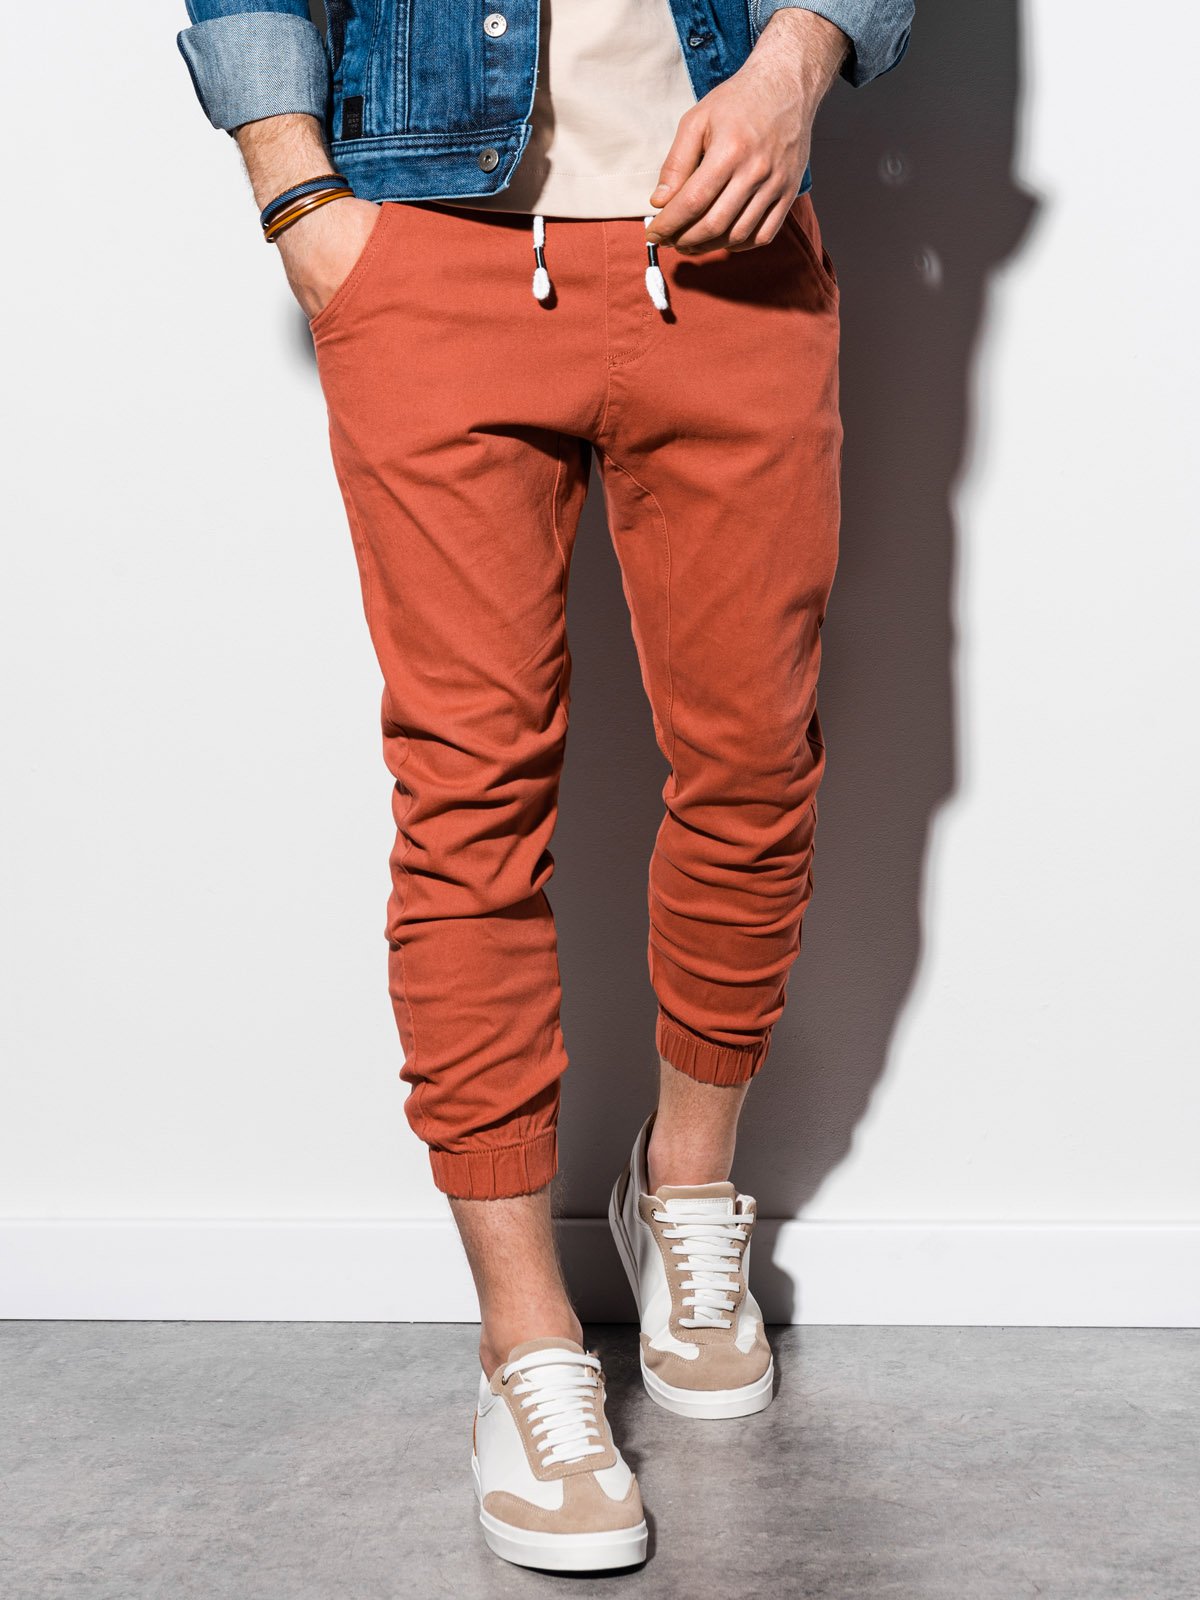 Men's pants joggers P731 - brick | MODONE wholesale - Clothing For Men